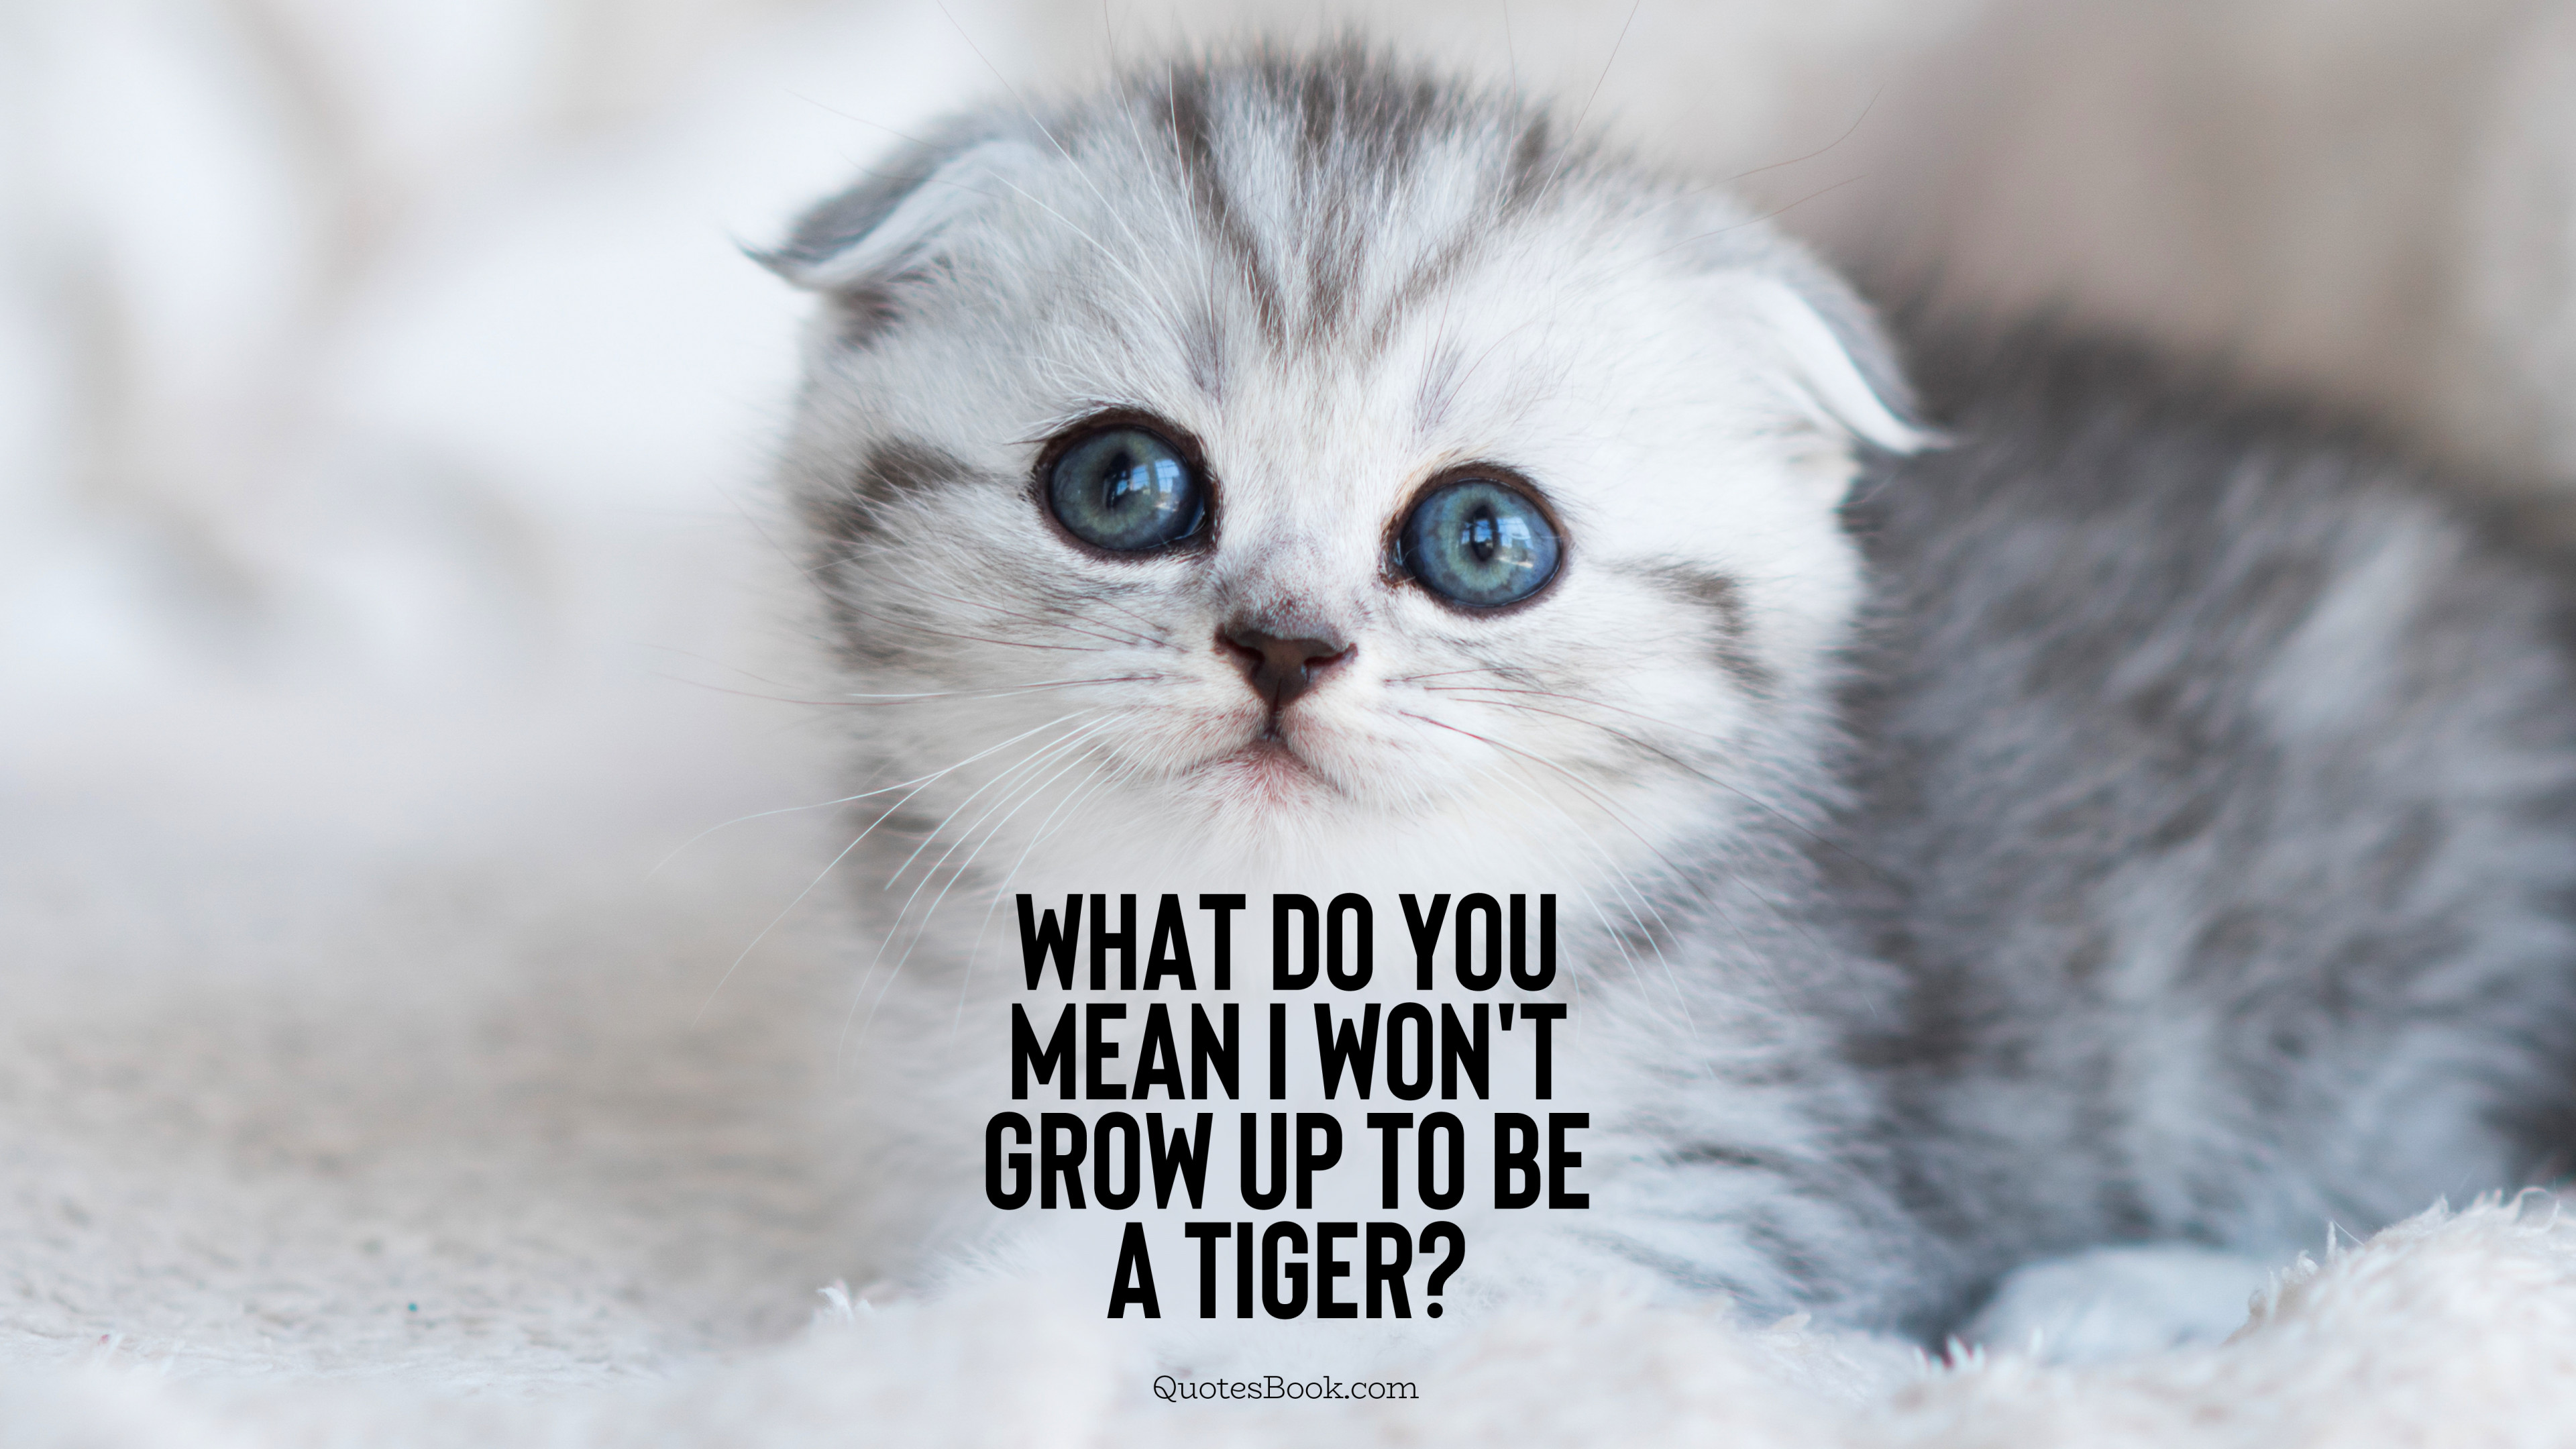 What do you mean I won't grow up to be a tiger? QuotesBook